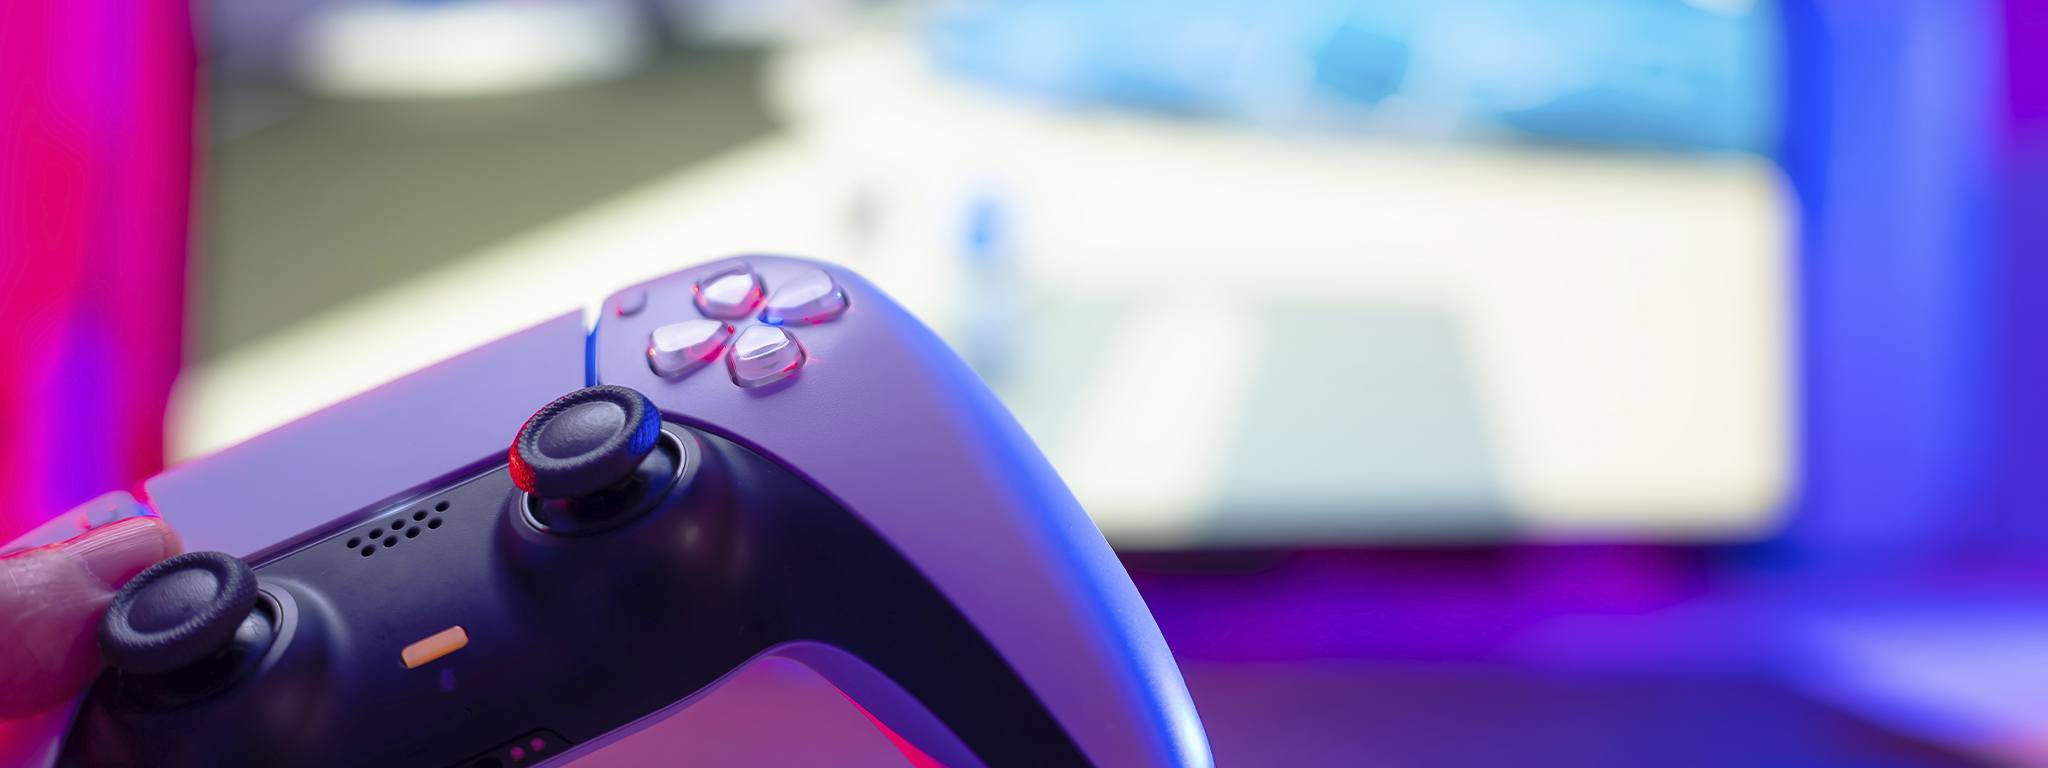 Nahaufnahme eines PlayStation 5-Controllers mit einem unscharfen Hintergrund eines Spiels auf dem Fernseher